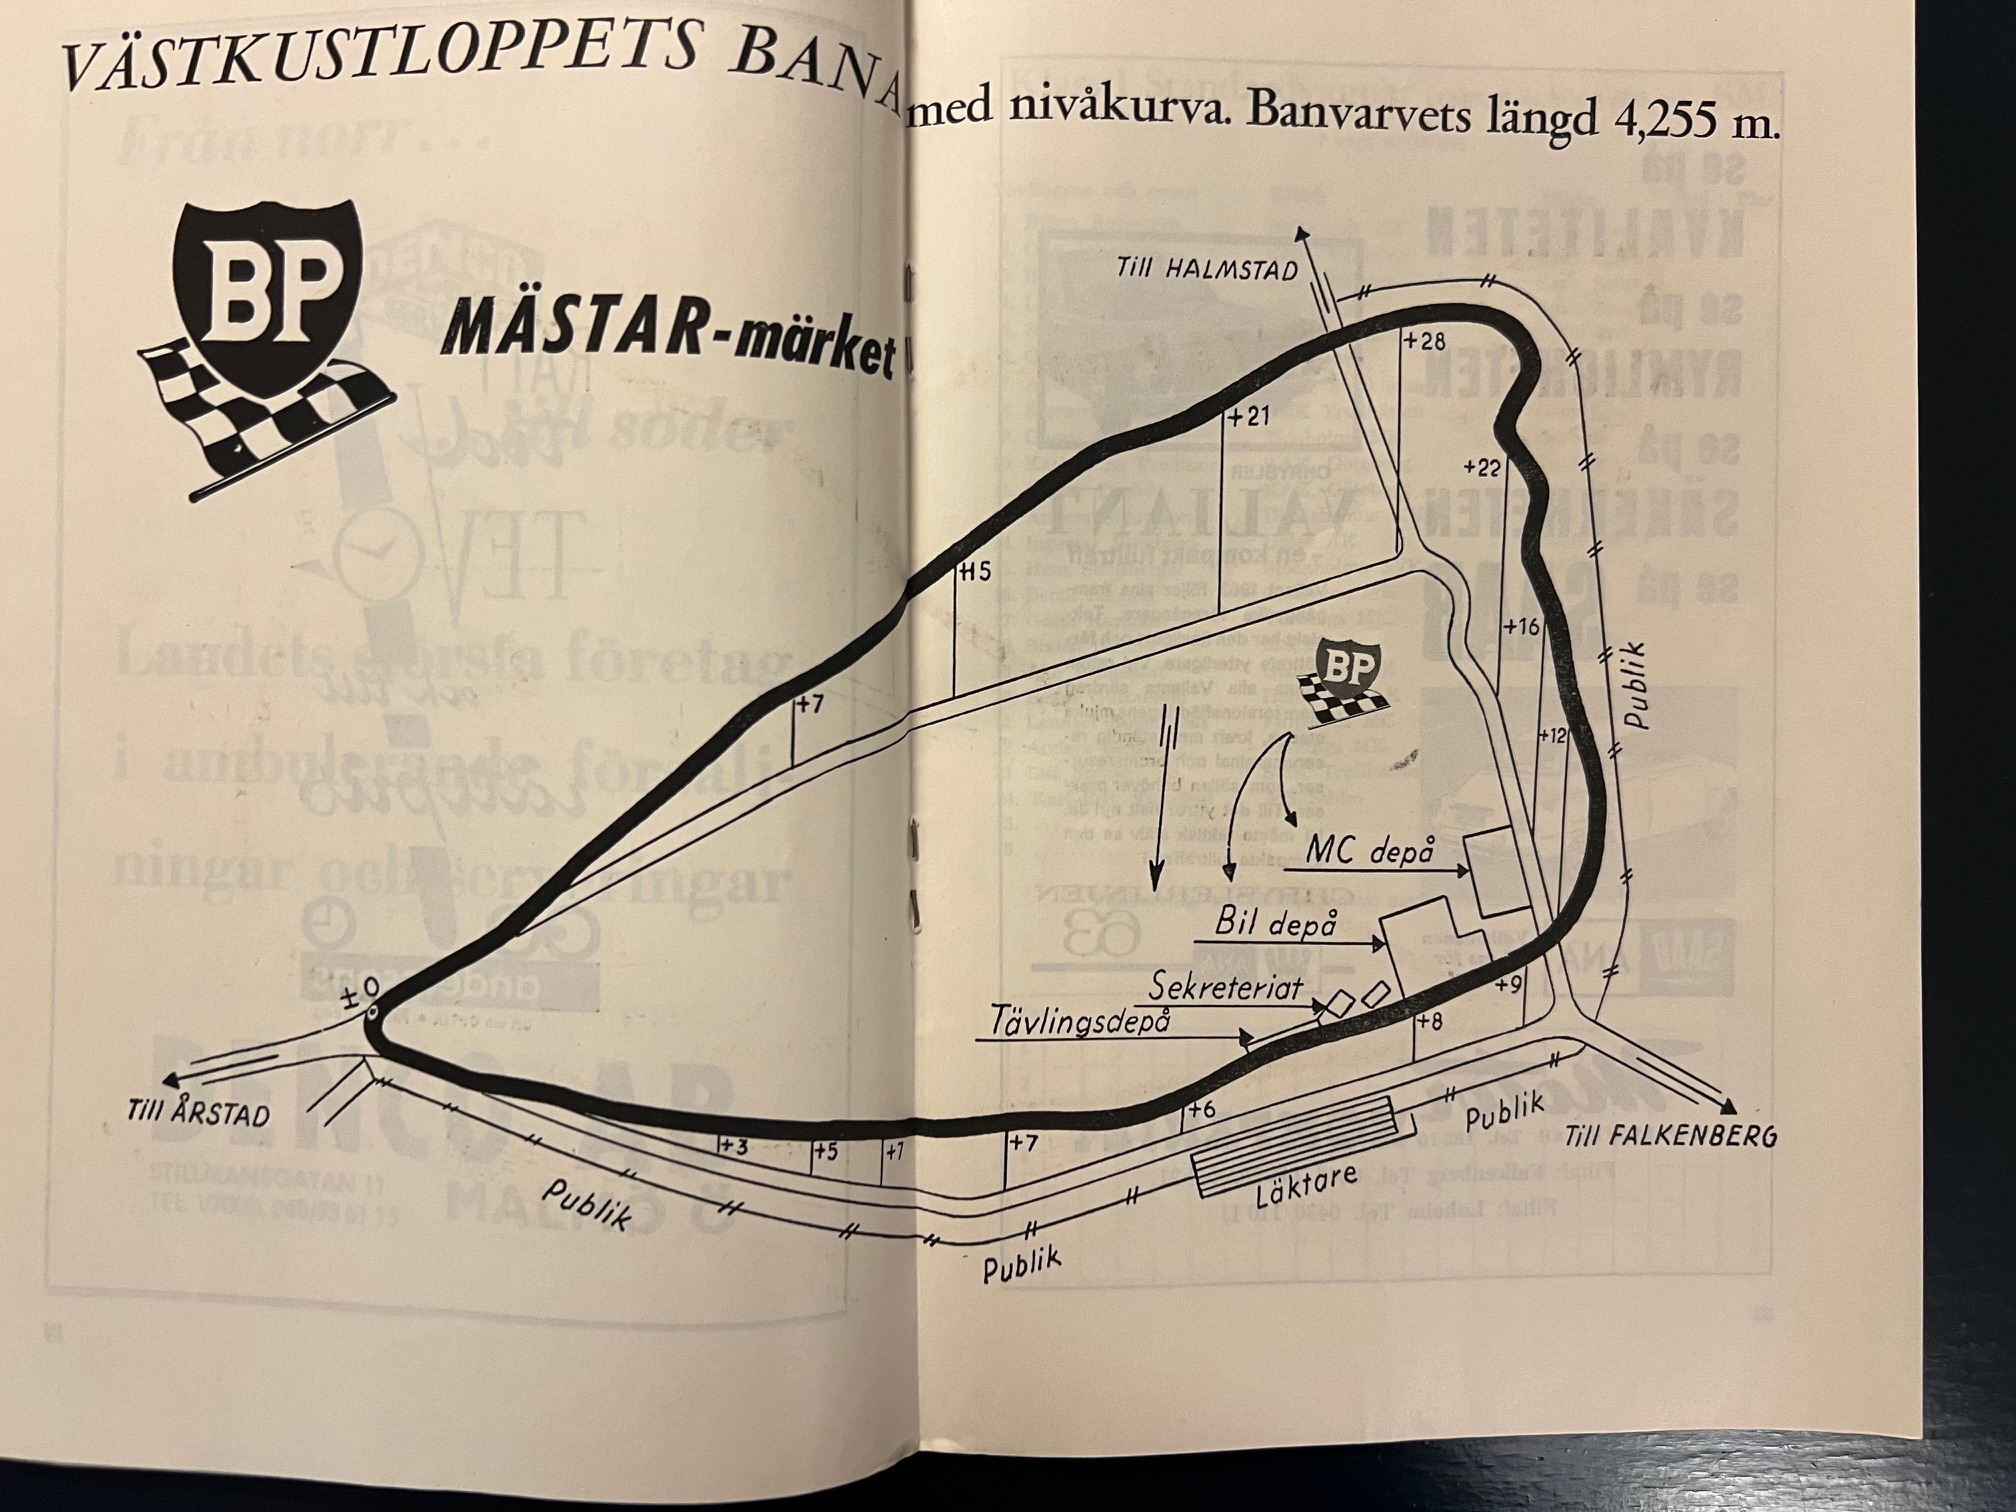 Västkustloppet 1963 - program från Pickos era - 52 sidor